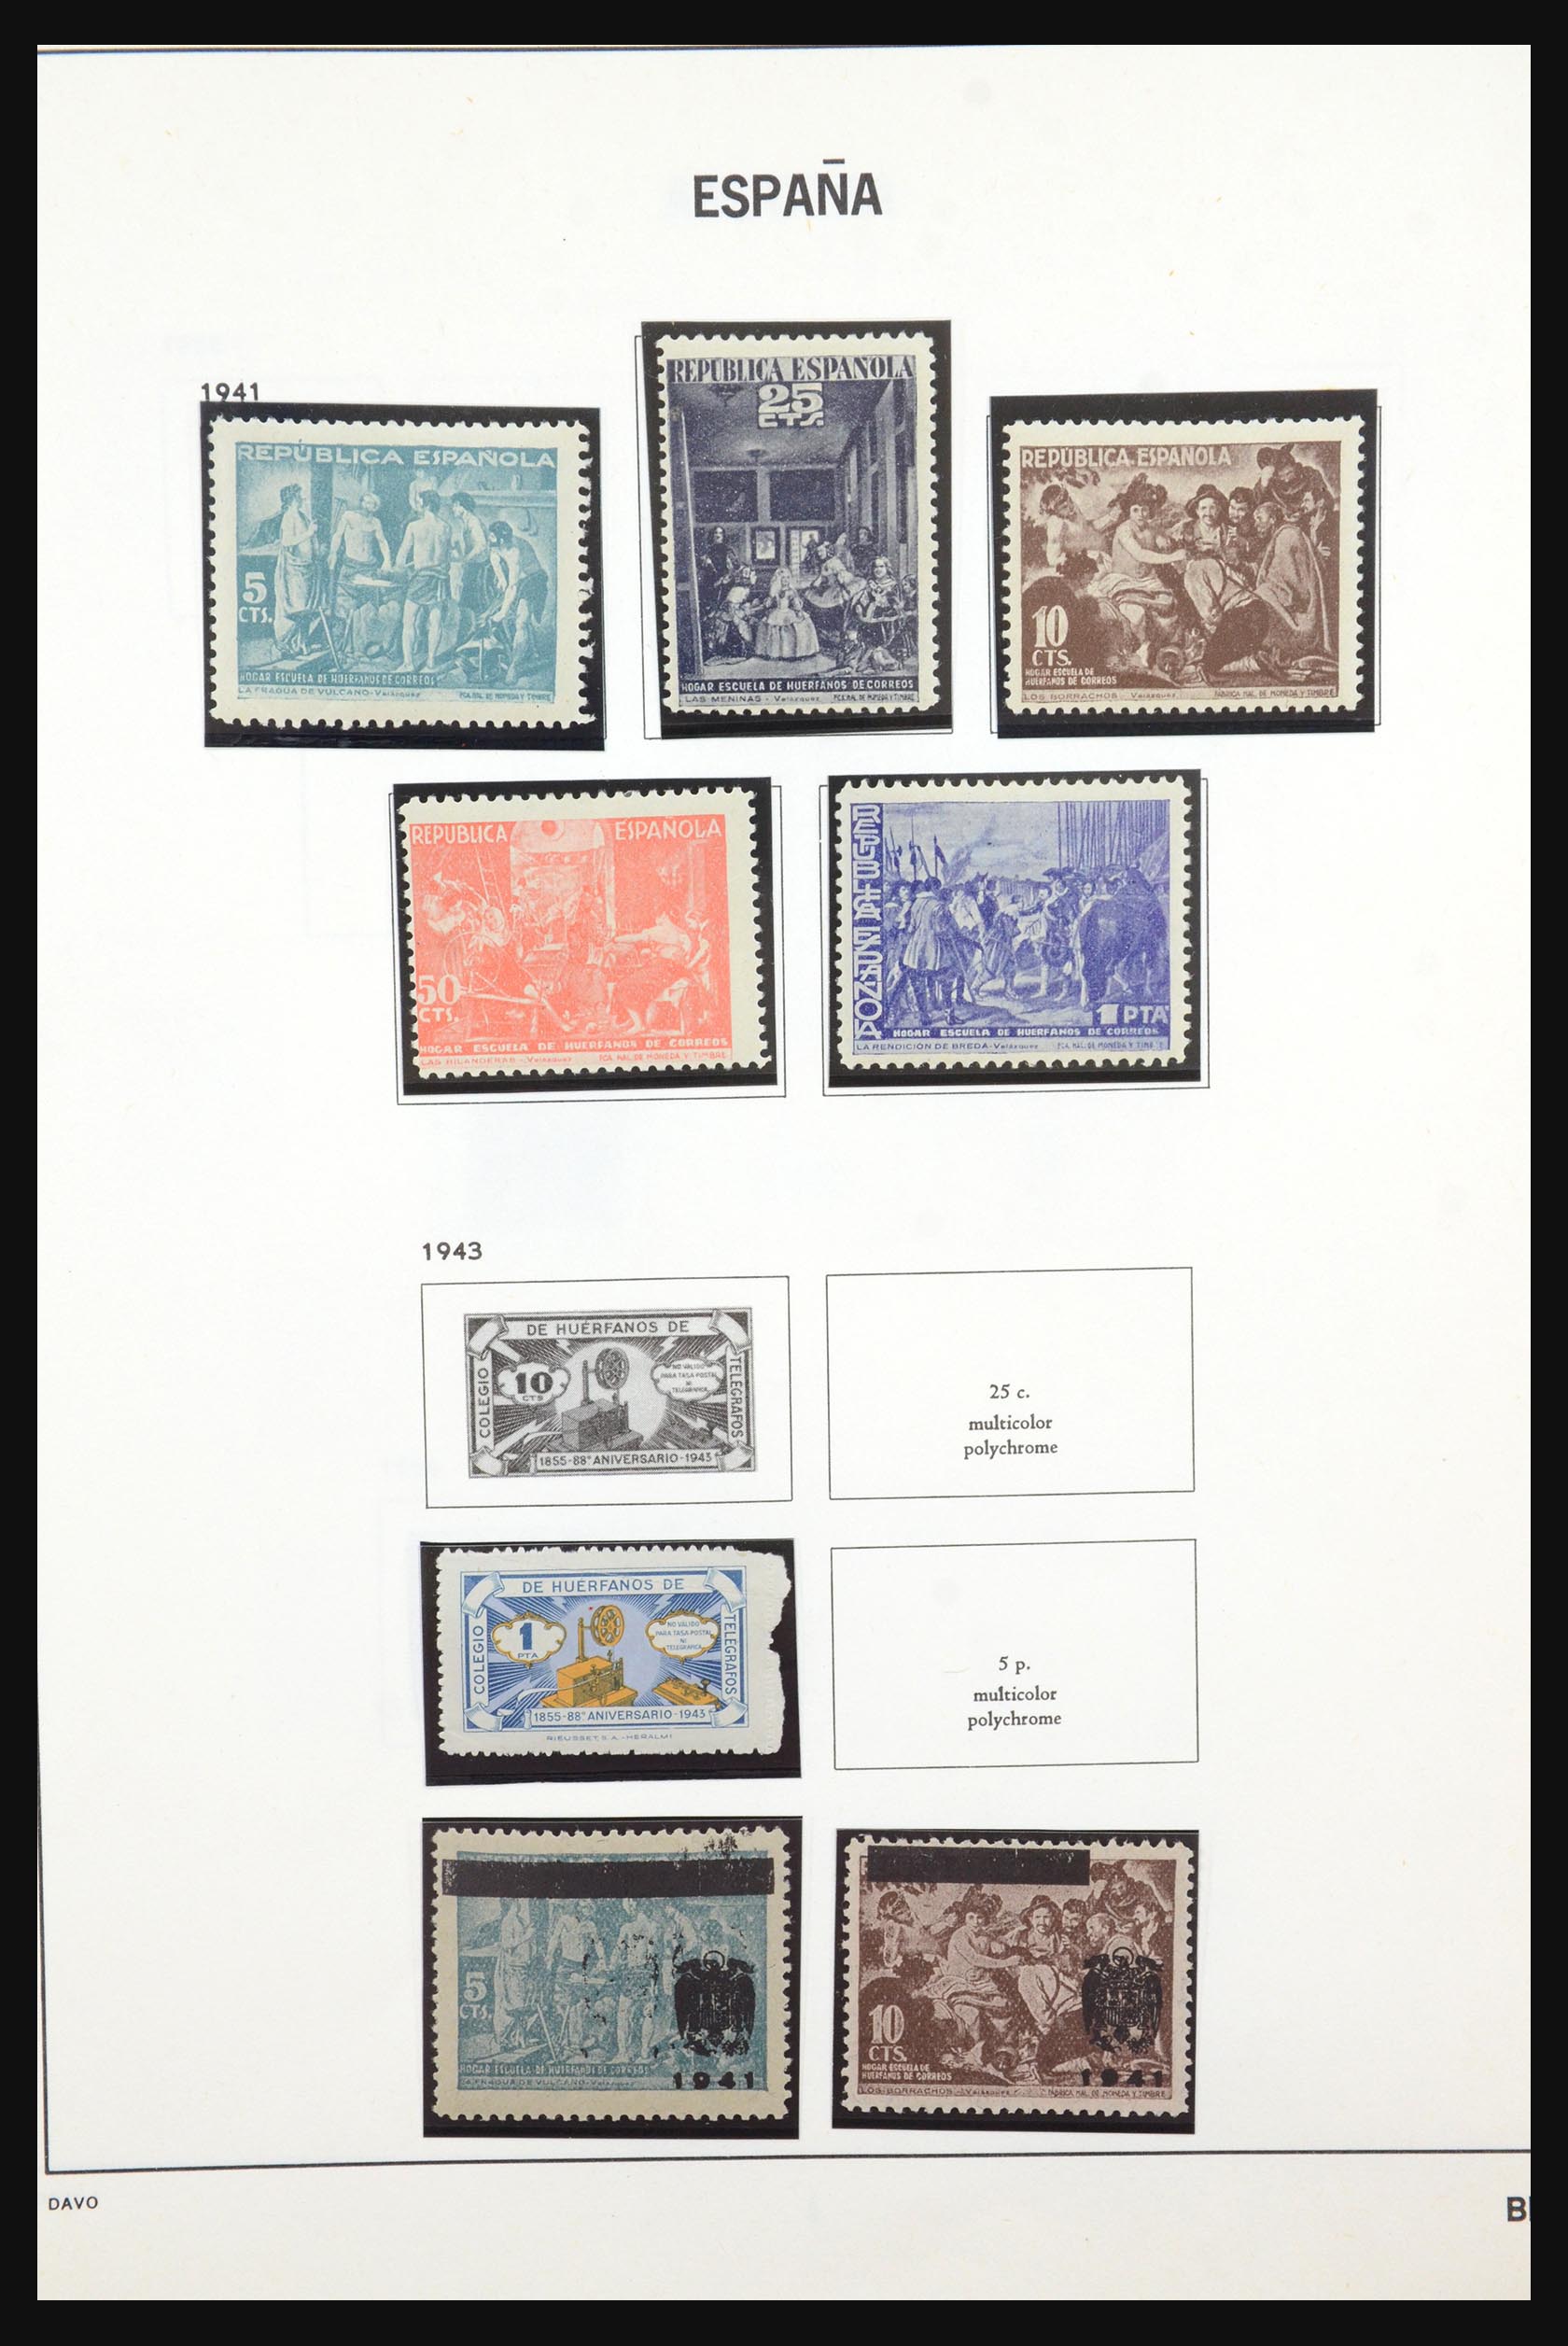 31620 067 - 31620 Spain 1850-1941.